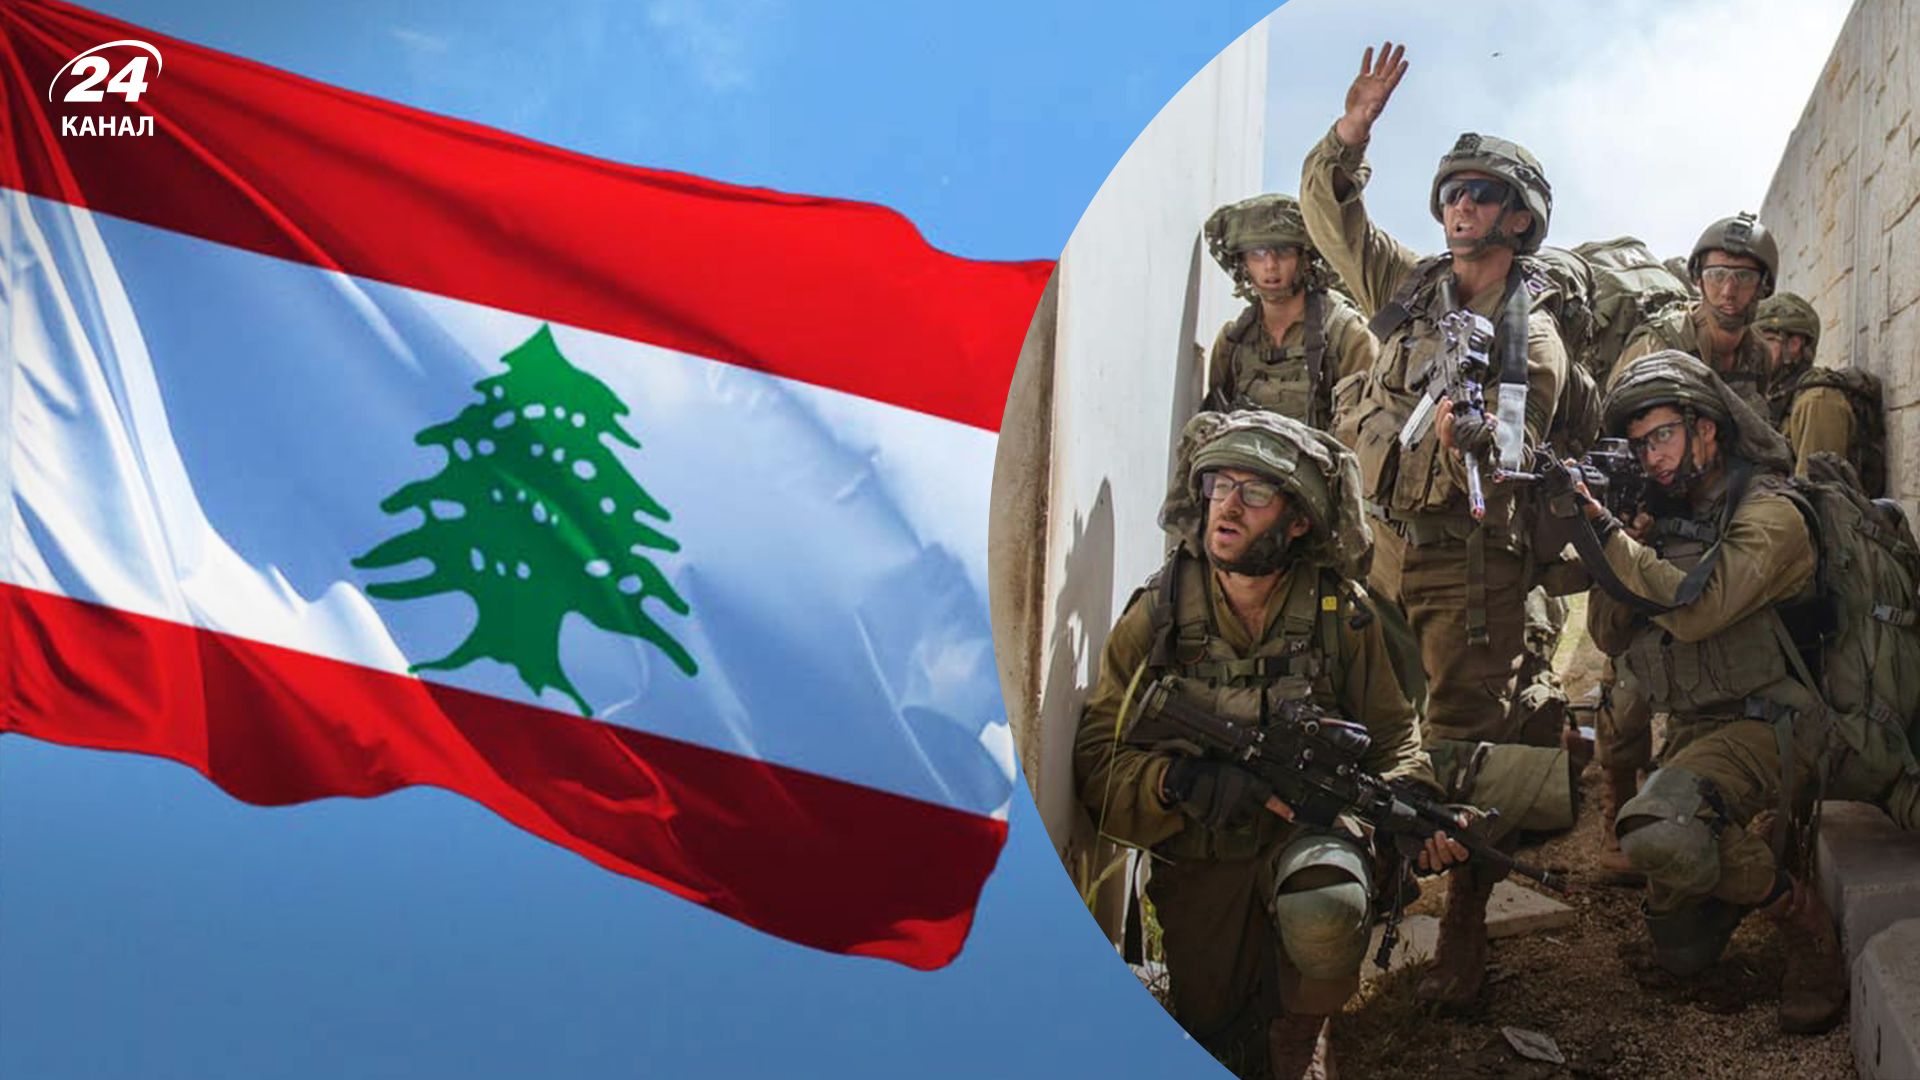 Бійці проникли з терориторії Лівану до Ізраїлю